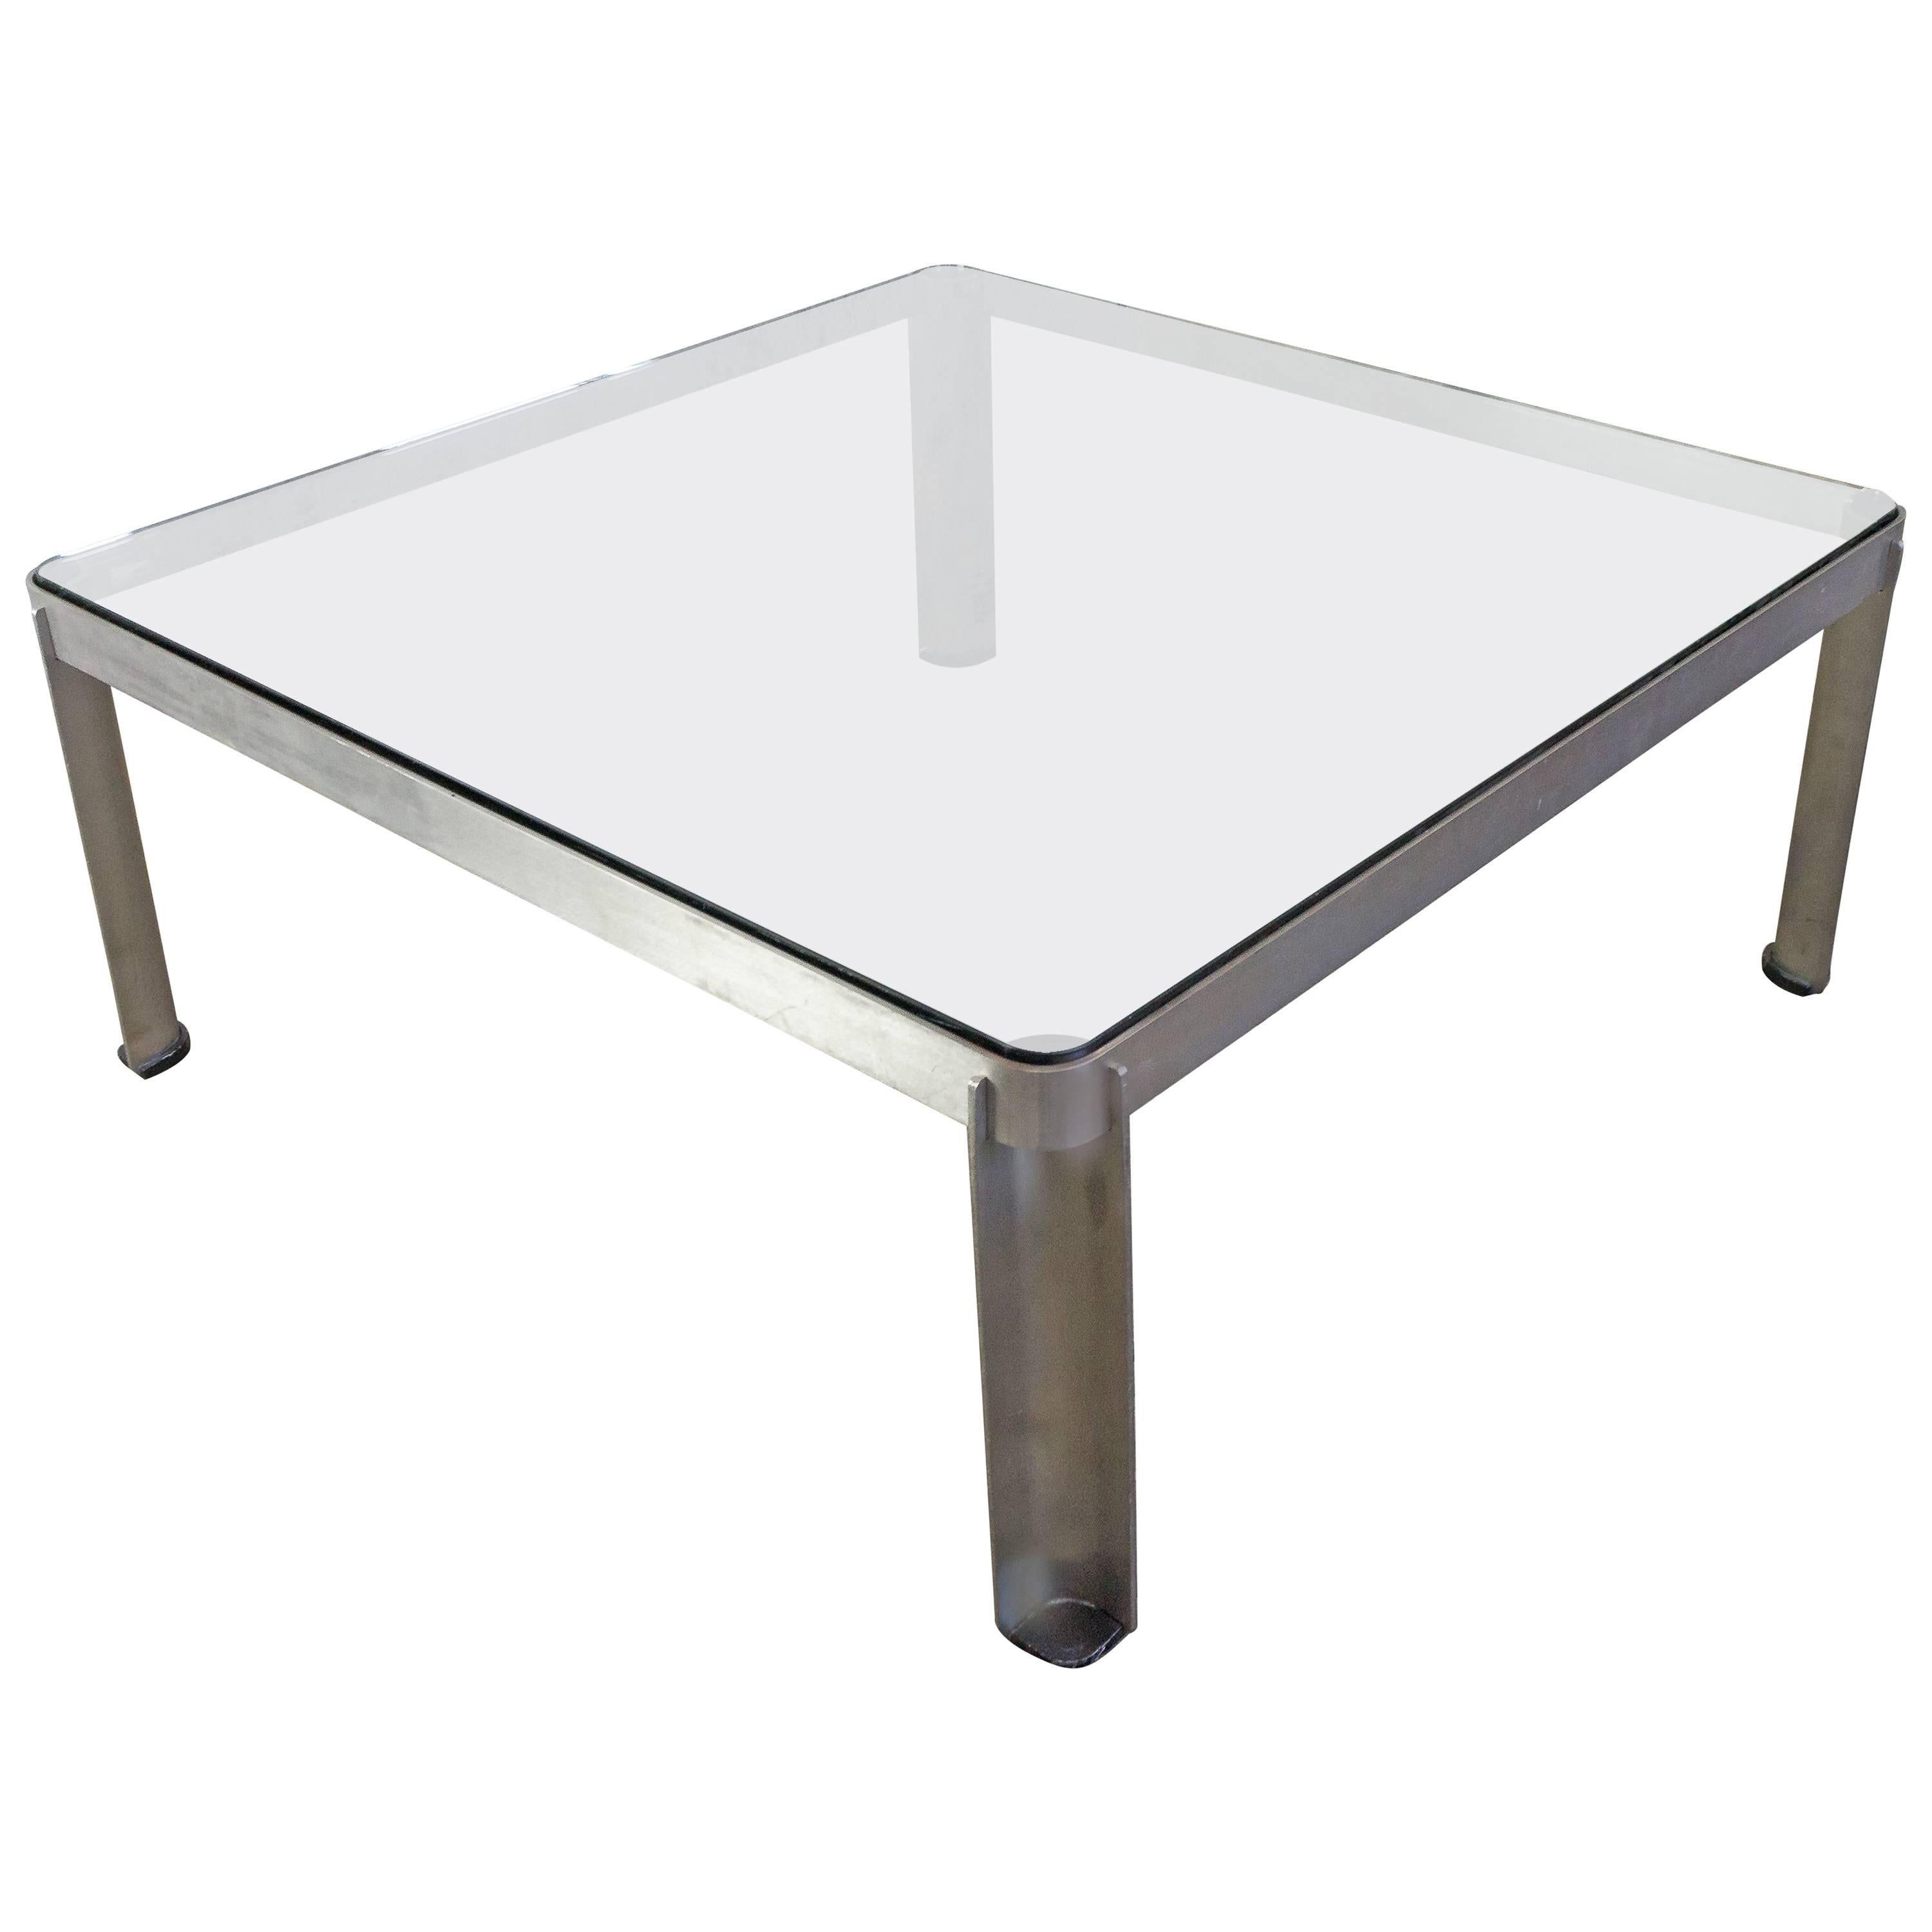 Table basse française vintage en aluminium et verre